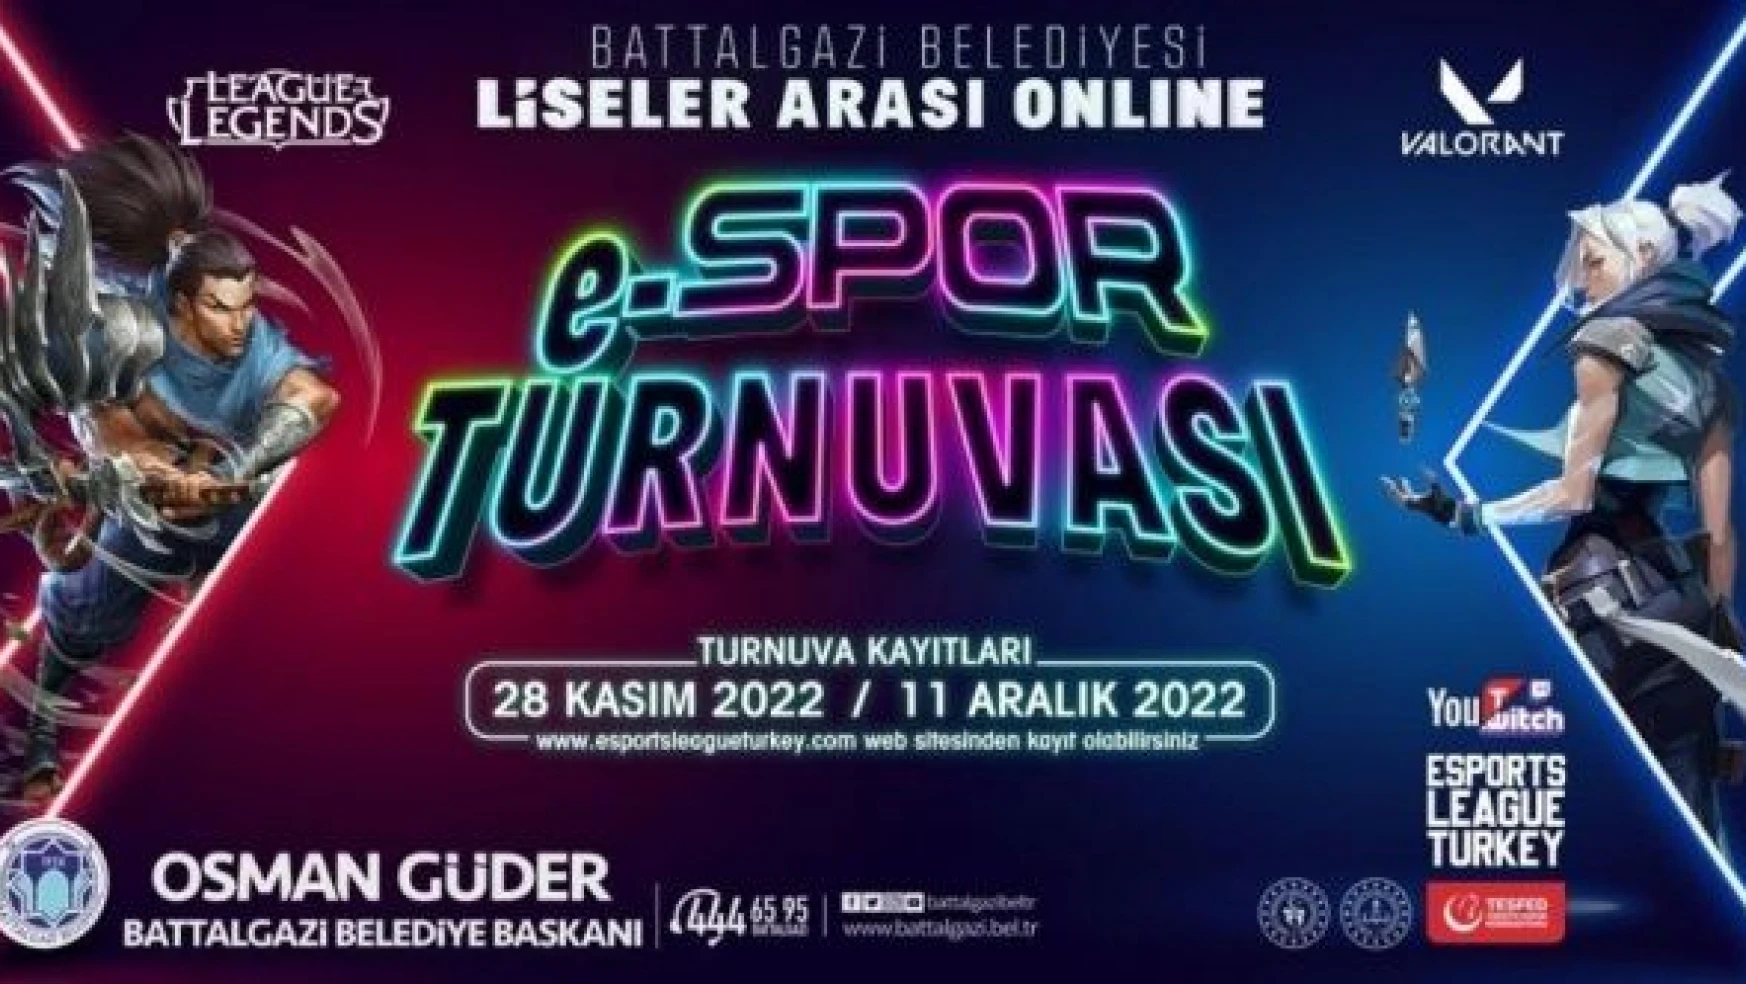 Malatya'da Liseler Arası Online E-spor Turnuvası başlıyor